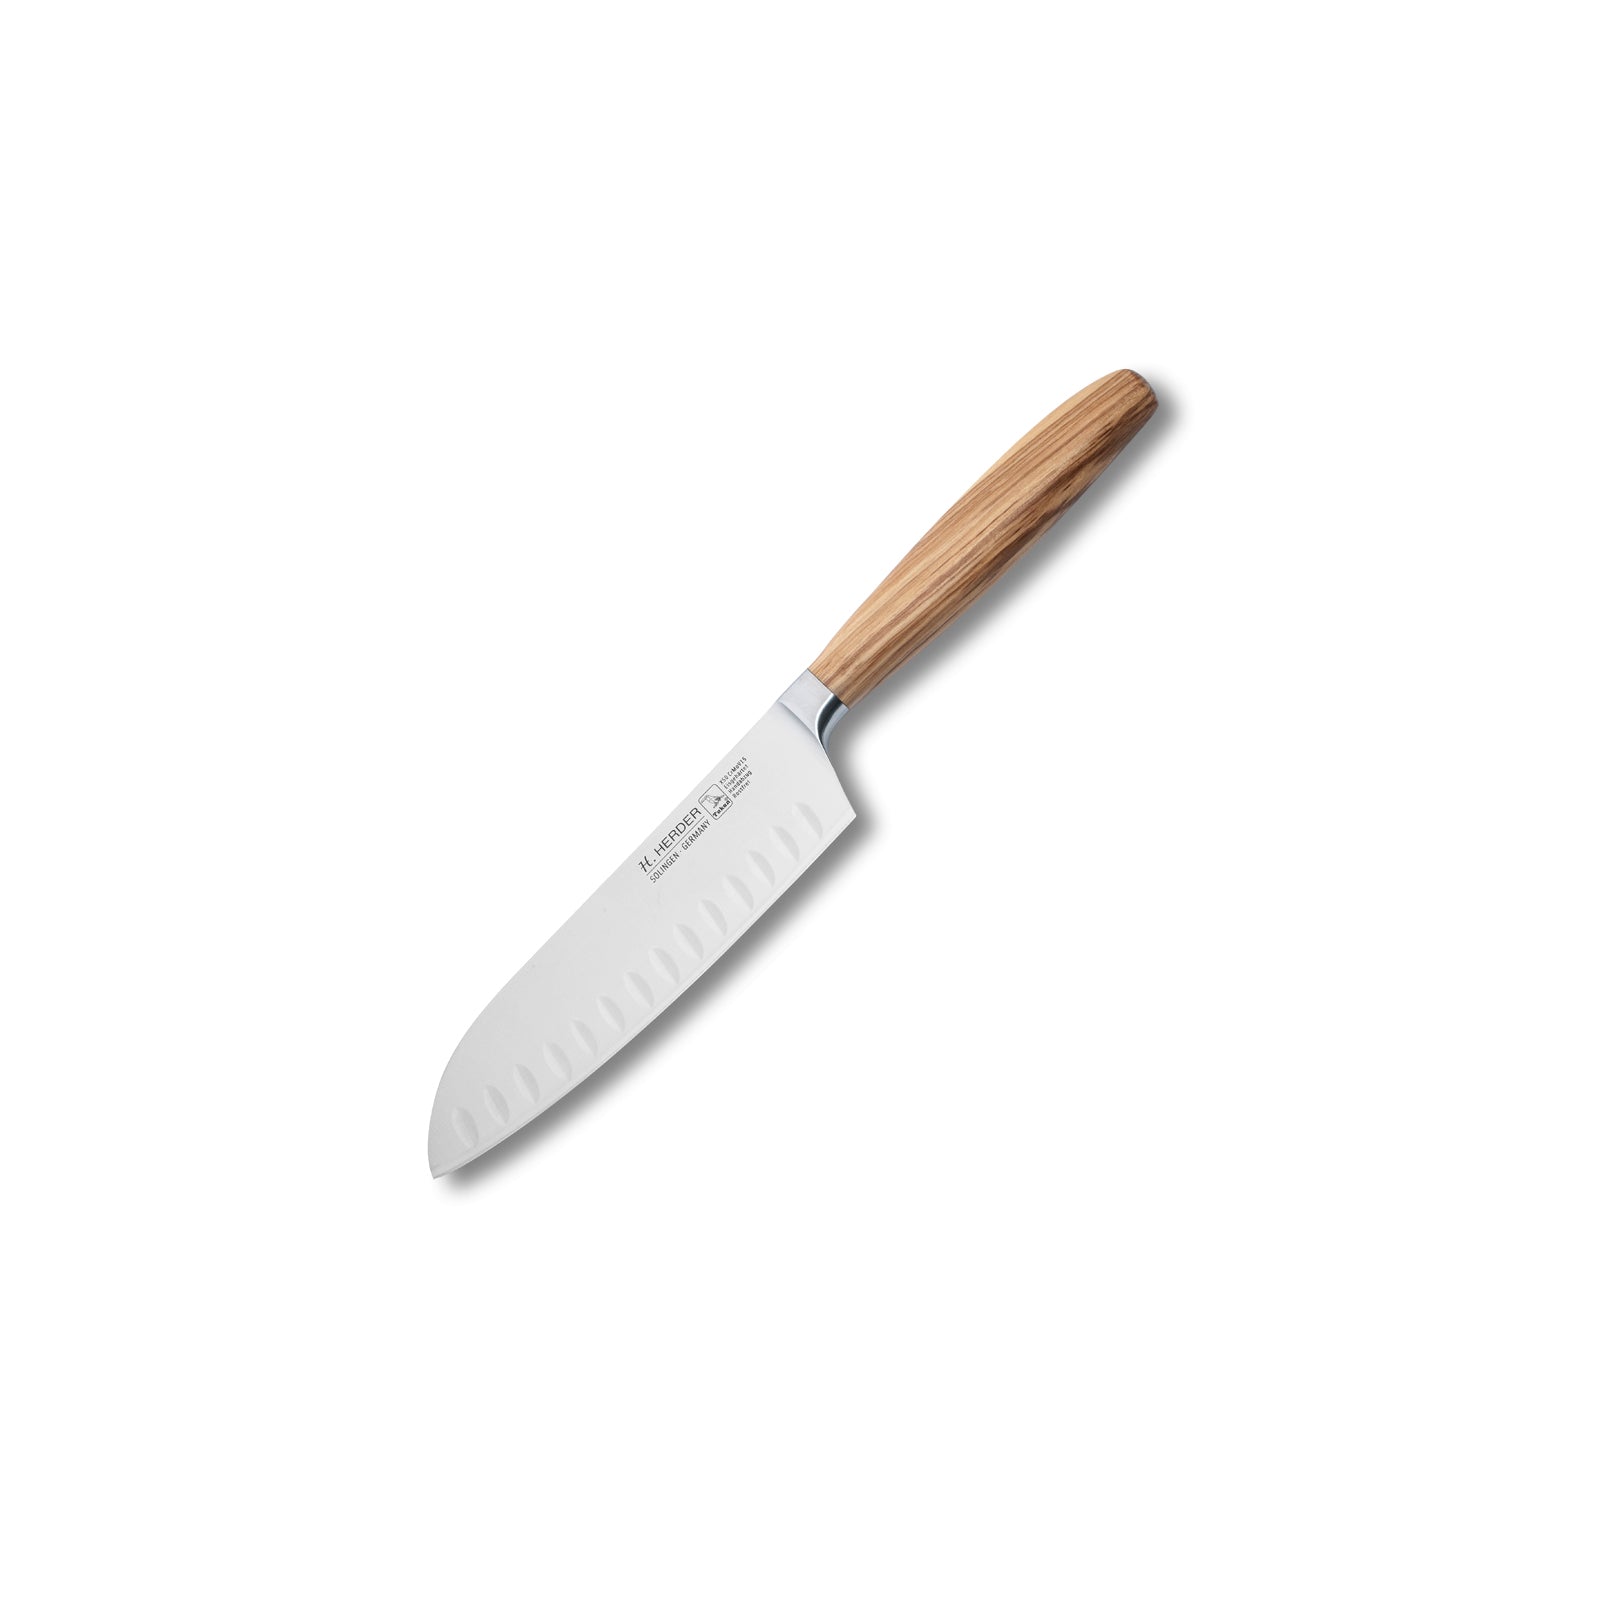 Couteau Santoku Eterno, bois d'olivier, longueur de lame 16cm, forgé, tranchant alvéolé